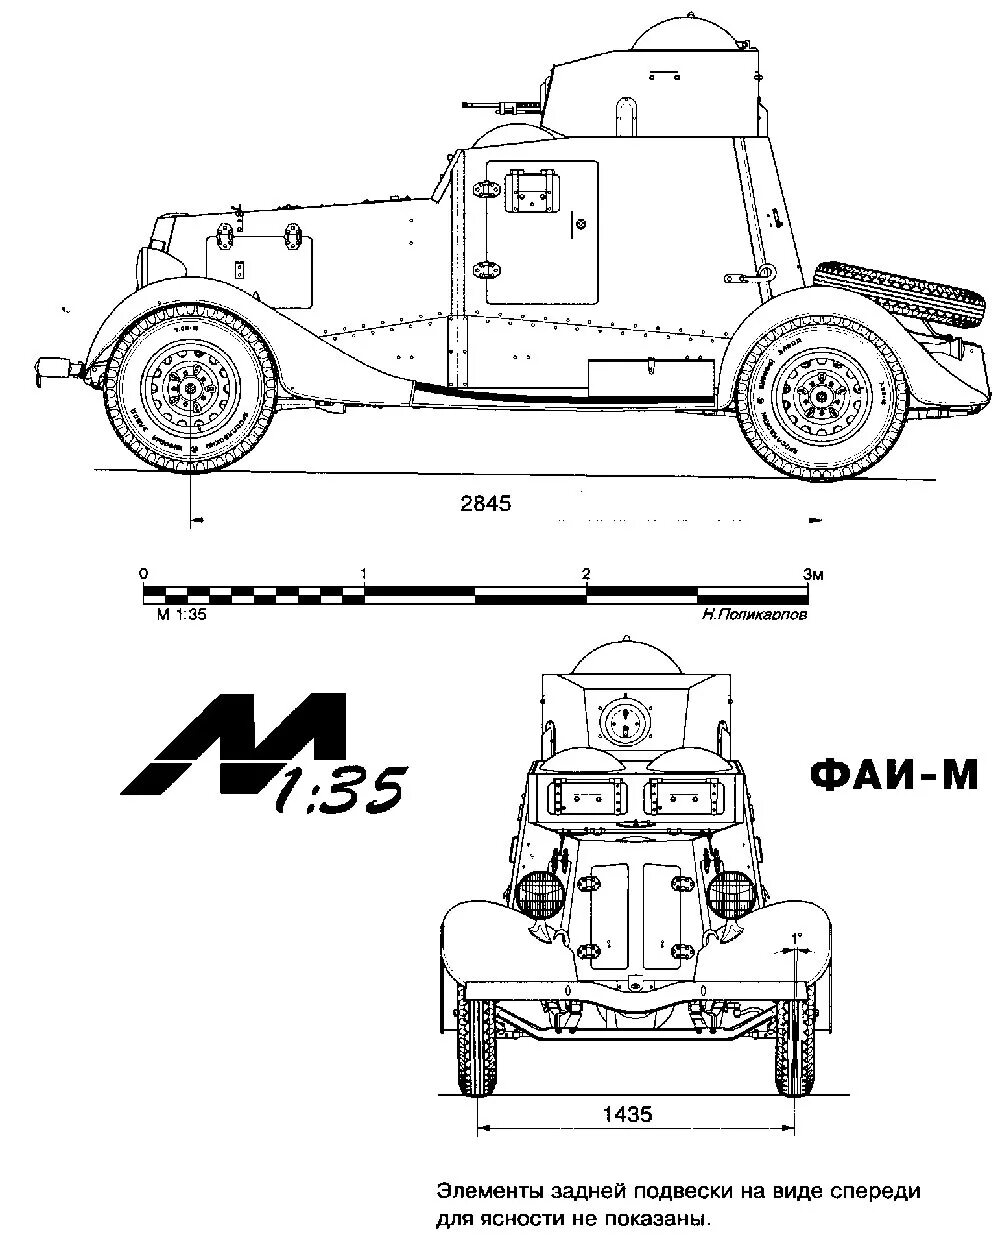 Схема ба. Ба-20 бронеавтомобиль. Ба-20 бронеавтомобиль чертежи. Бронеавтомобиль ба ФАИ чертежи. ФАИ-М бронеавтомобиль чертежи.